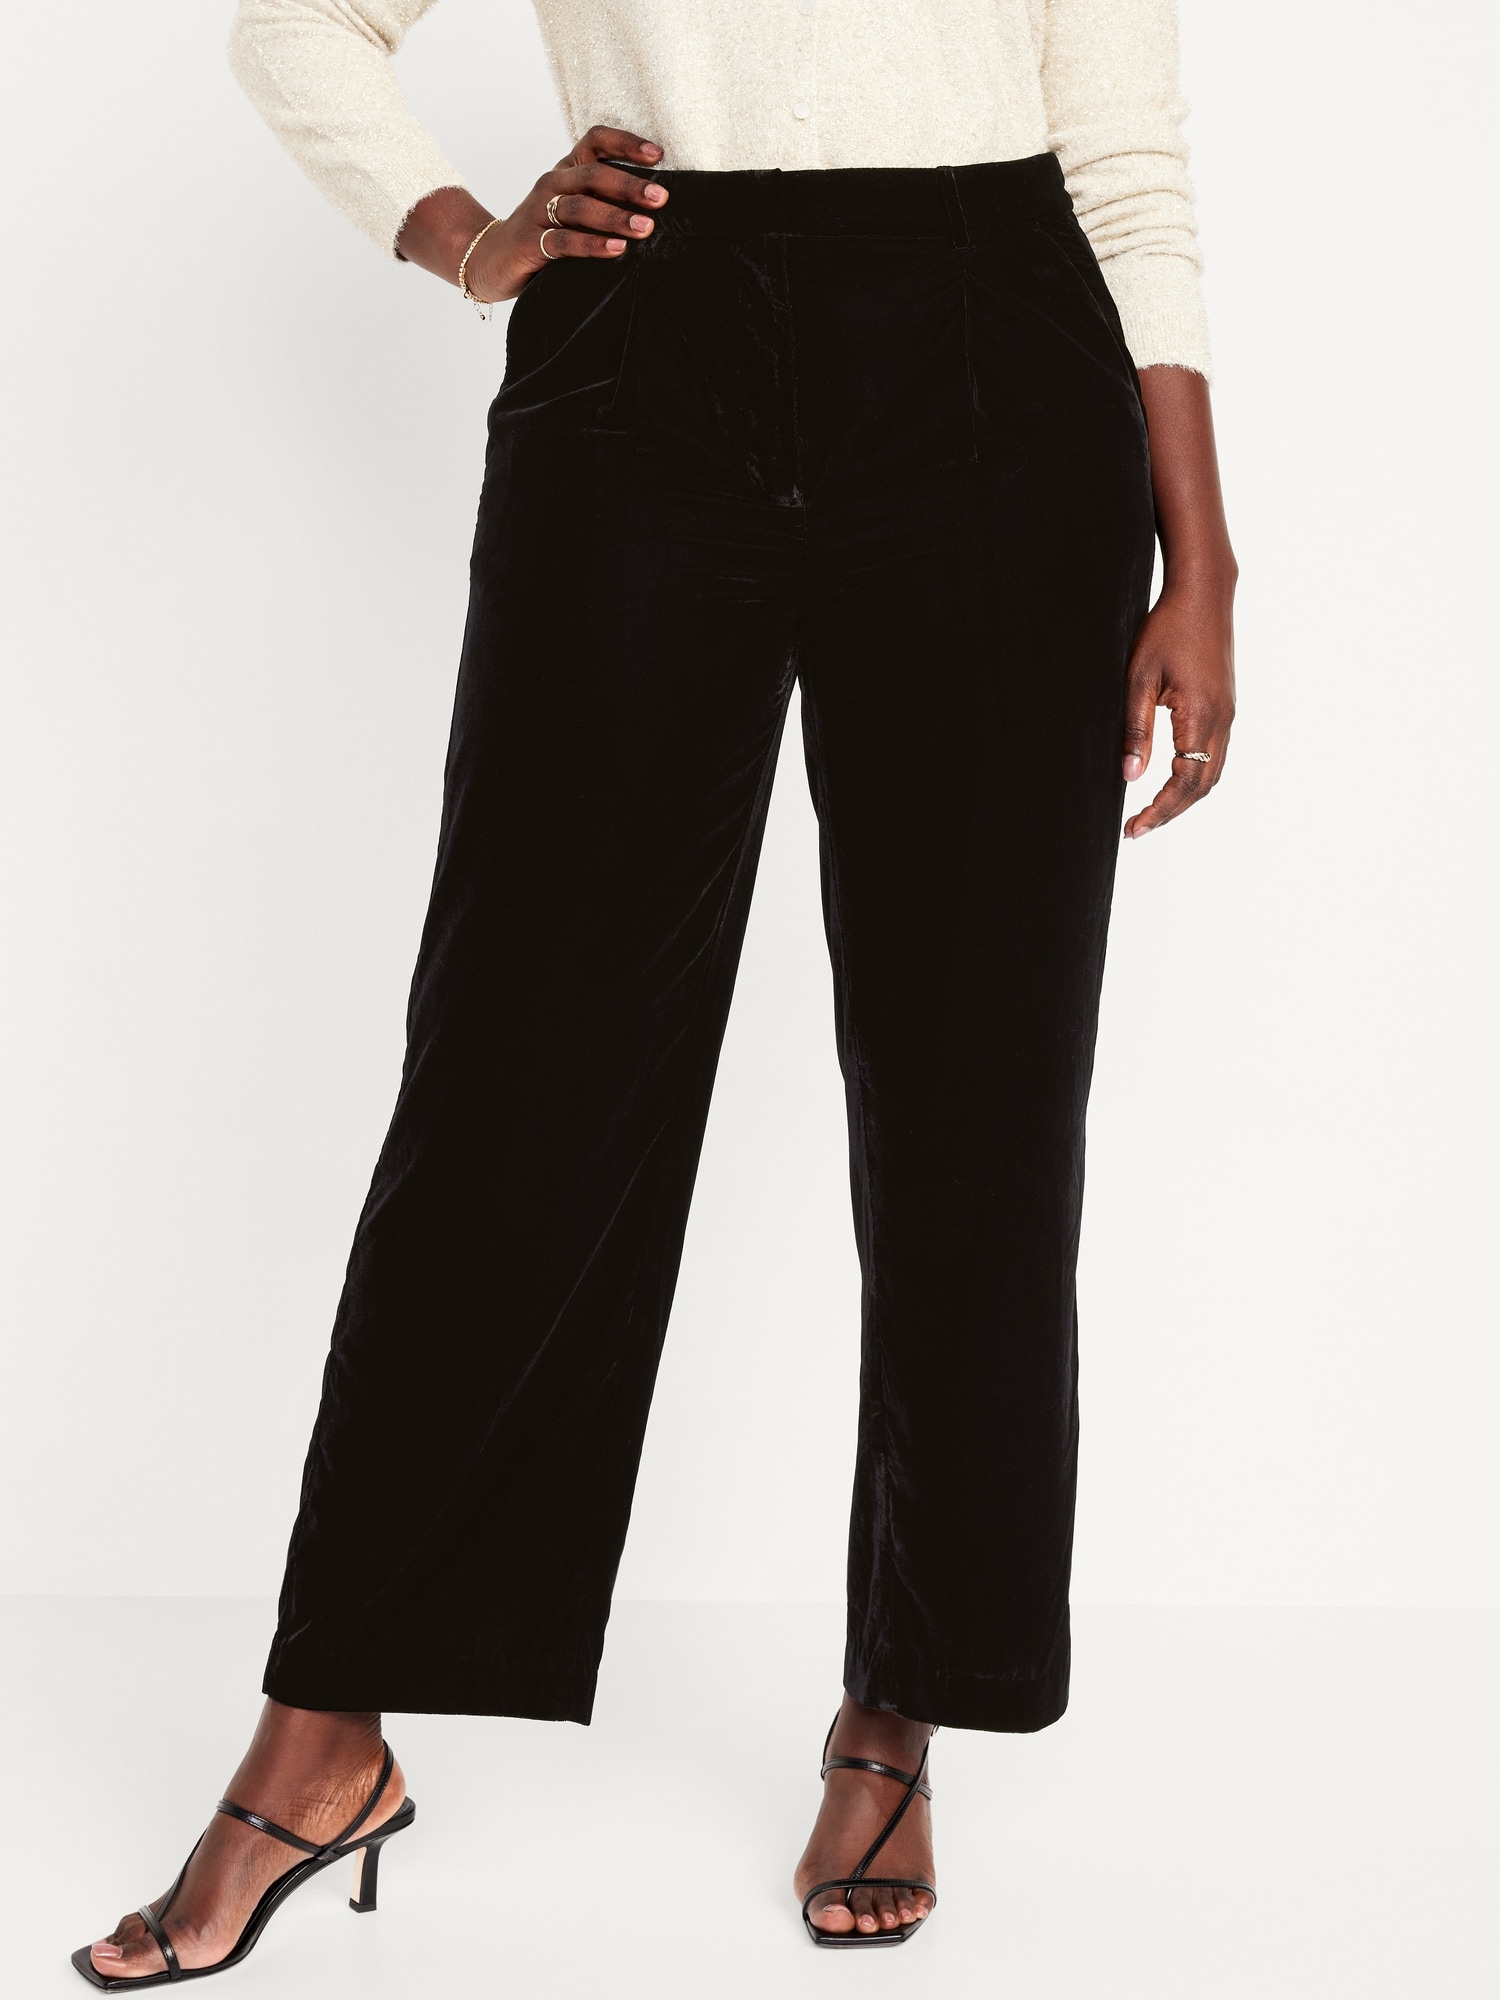 Buy Women Black Velvet Straight Pants Online At Best Price